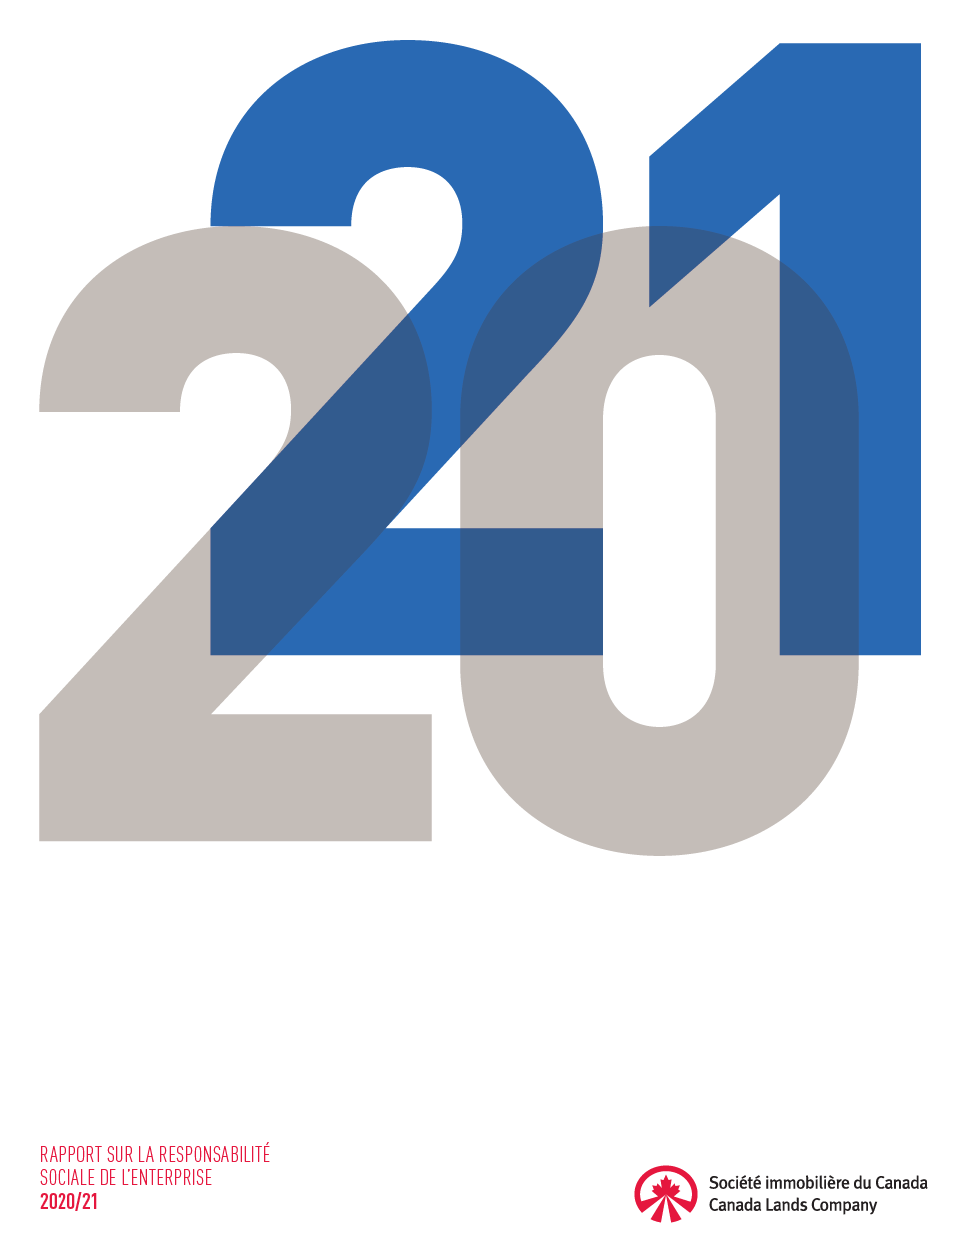  Les nombres 20 et 21 avec le logo de la Société immobilière du Canada